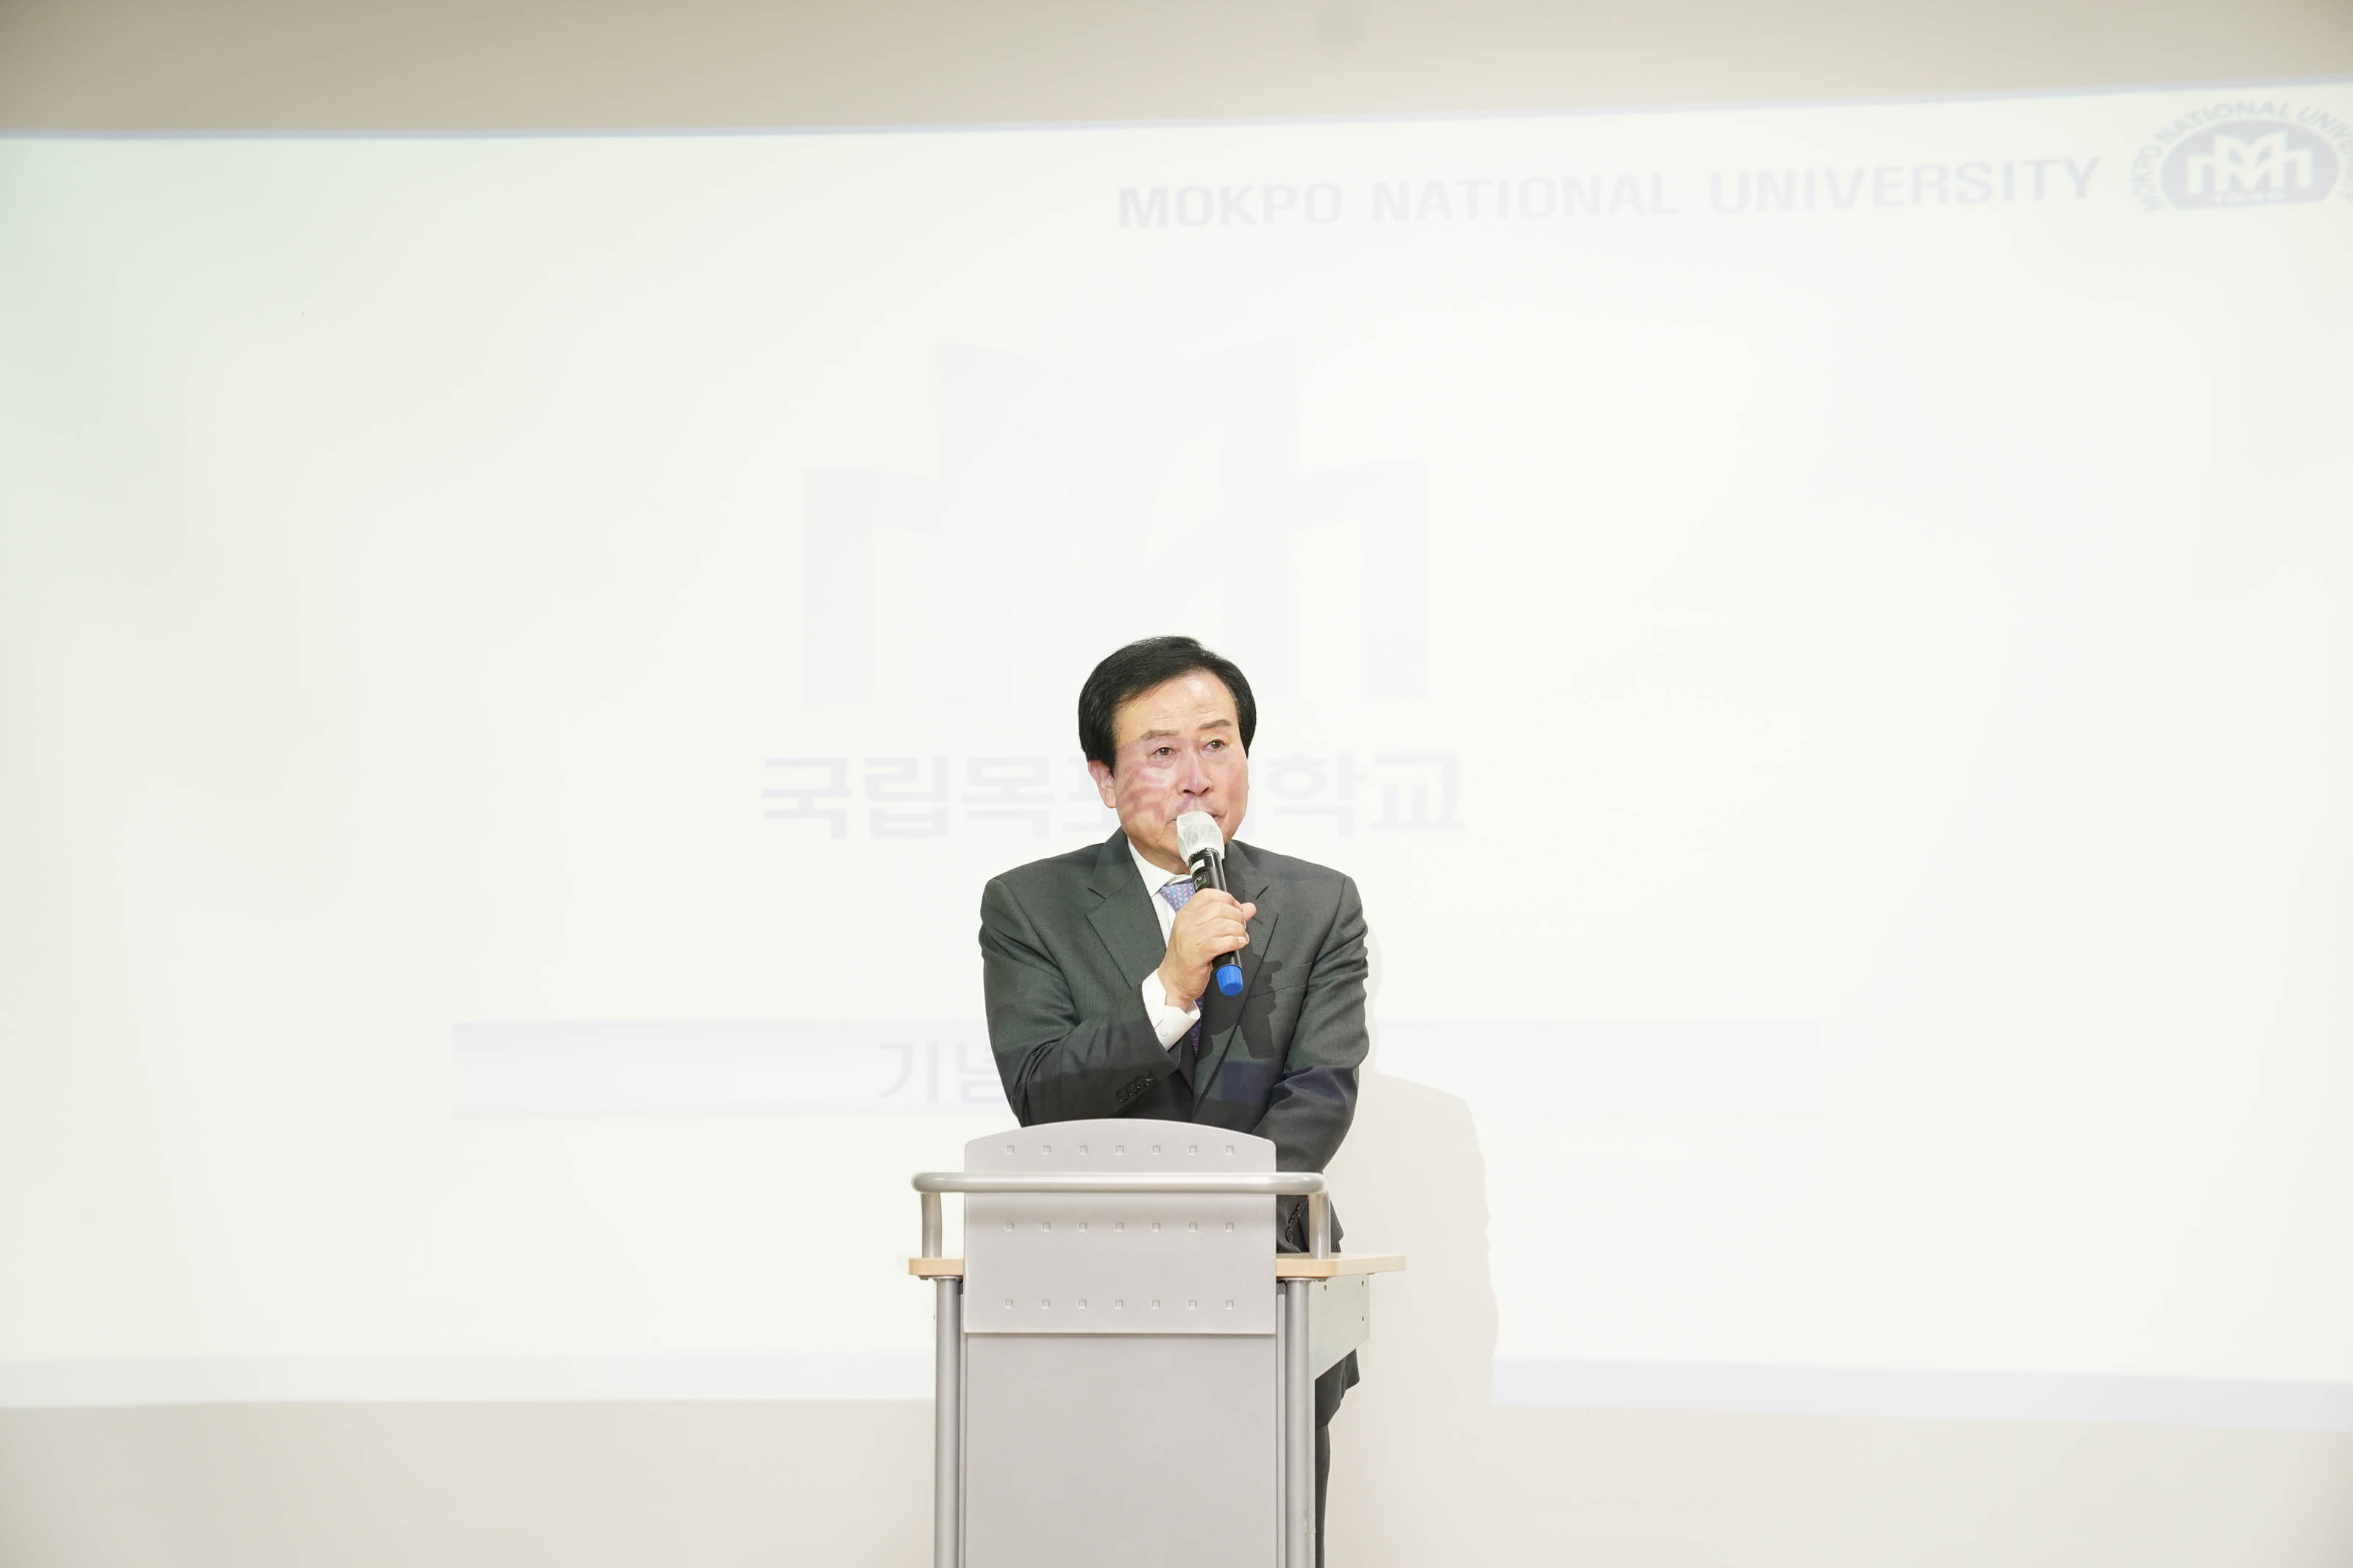 목포시청 박홍률 시장이 단상에 서서 마이크를 들고 얘기하고 있다.